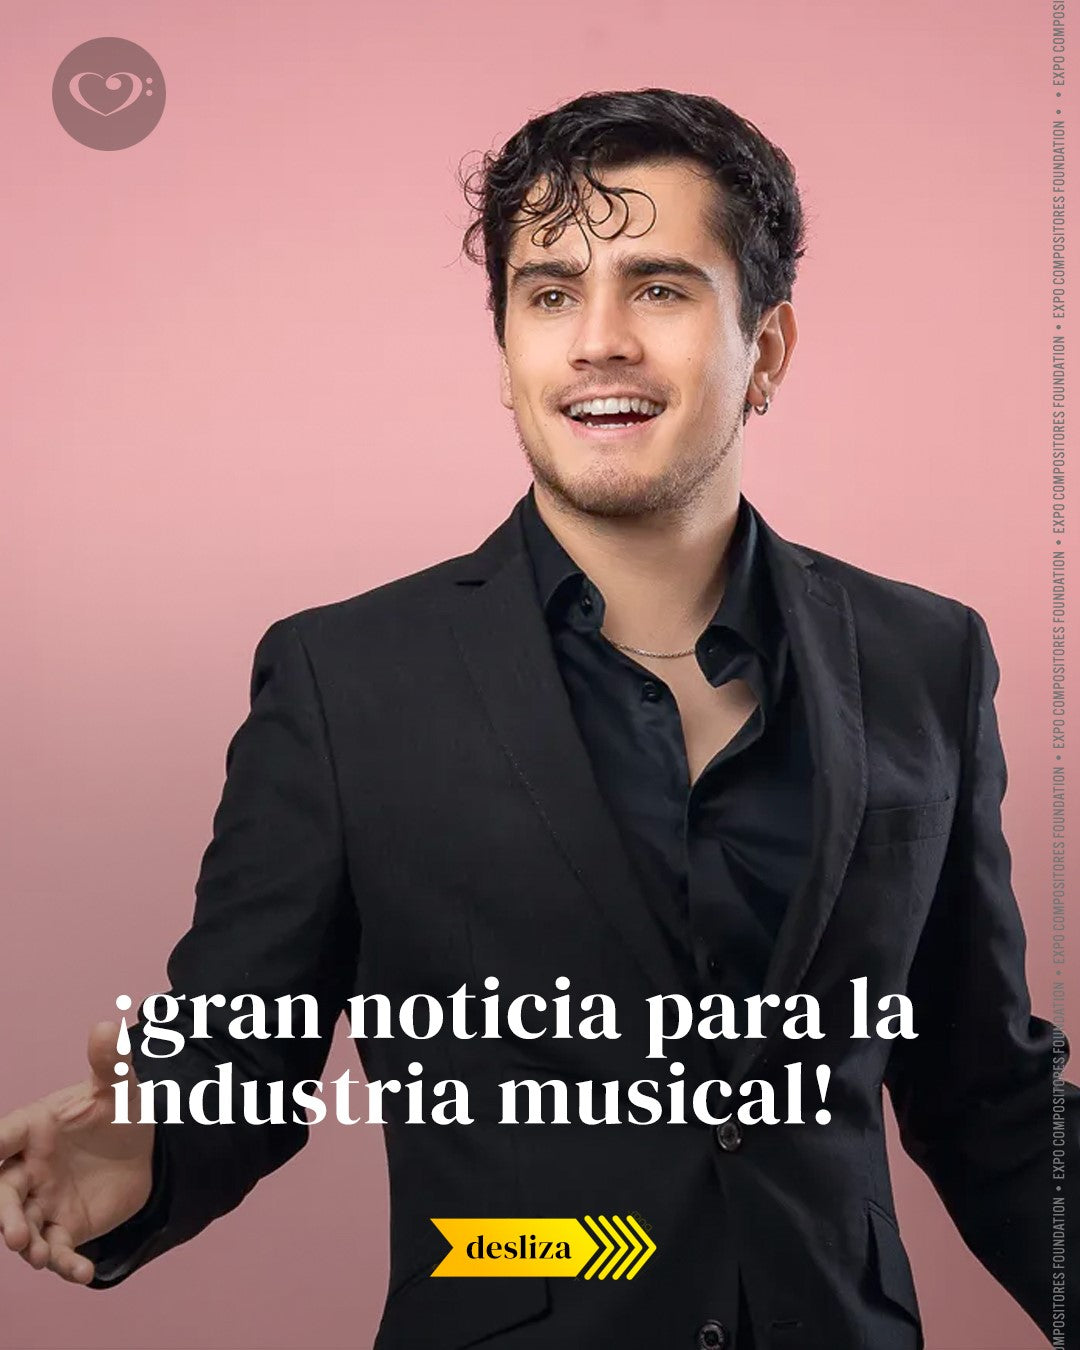 Expo Compositores ha sumado a sus filas a una de las grandes promesas de la música latina: El talentoso chileno Nico Ruiz.⁠